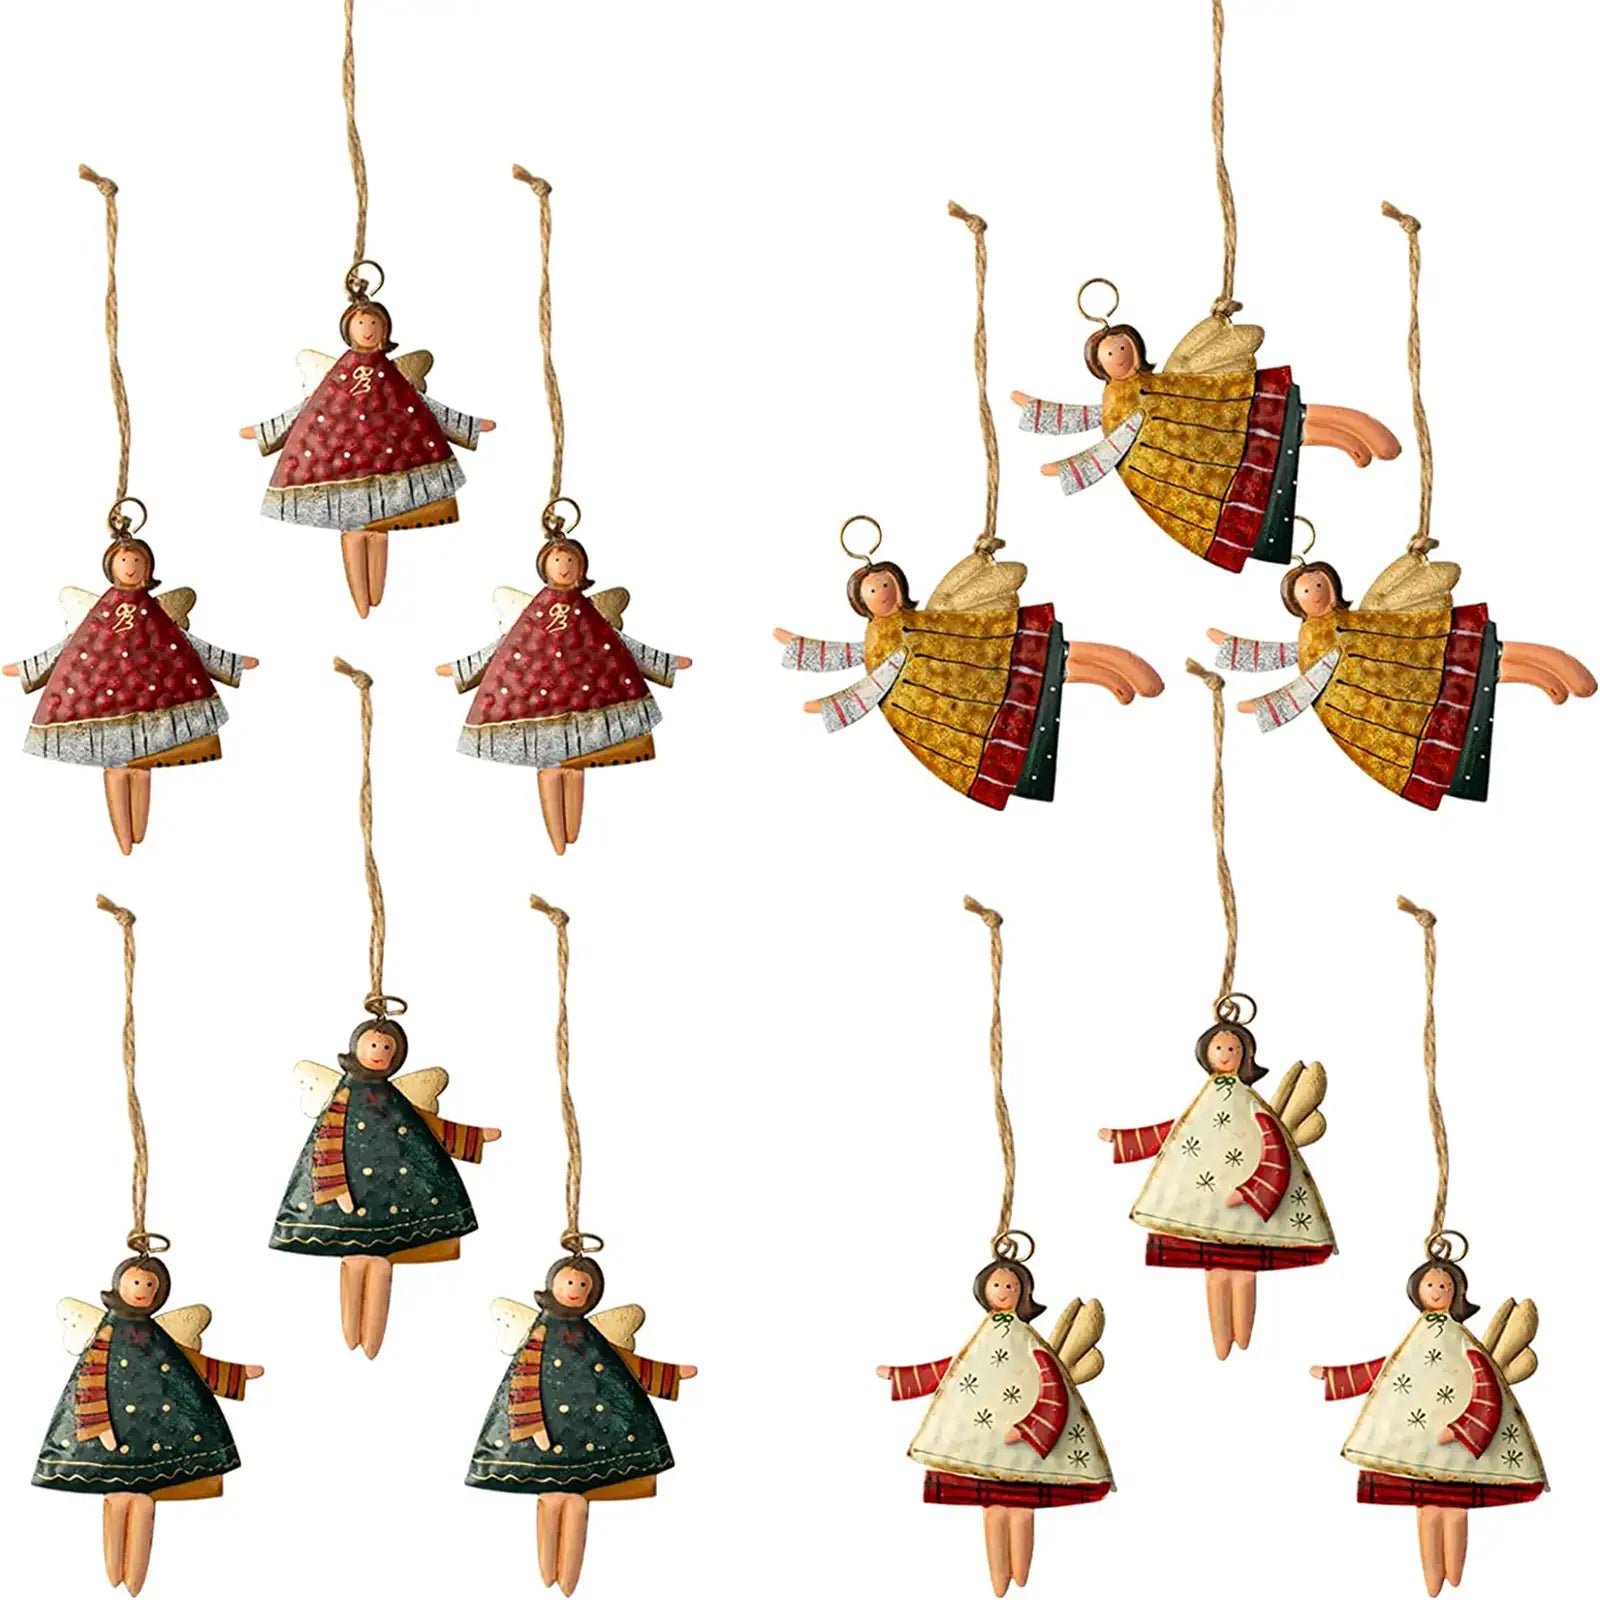 Juego de adornos navideños para árbol de Navidad, decoración de ángeles danzantes de metal, paquete de 12 